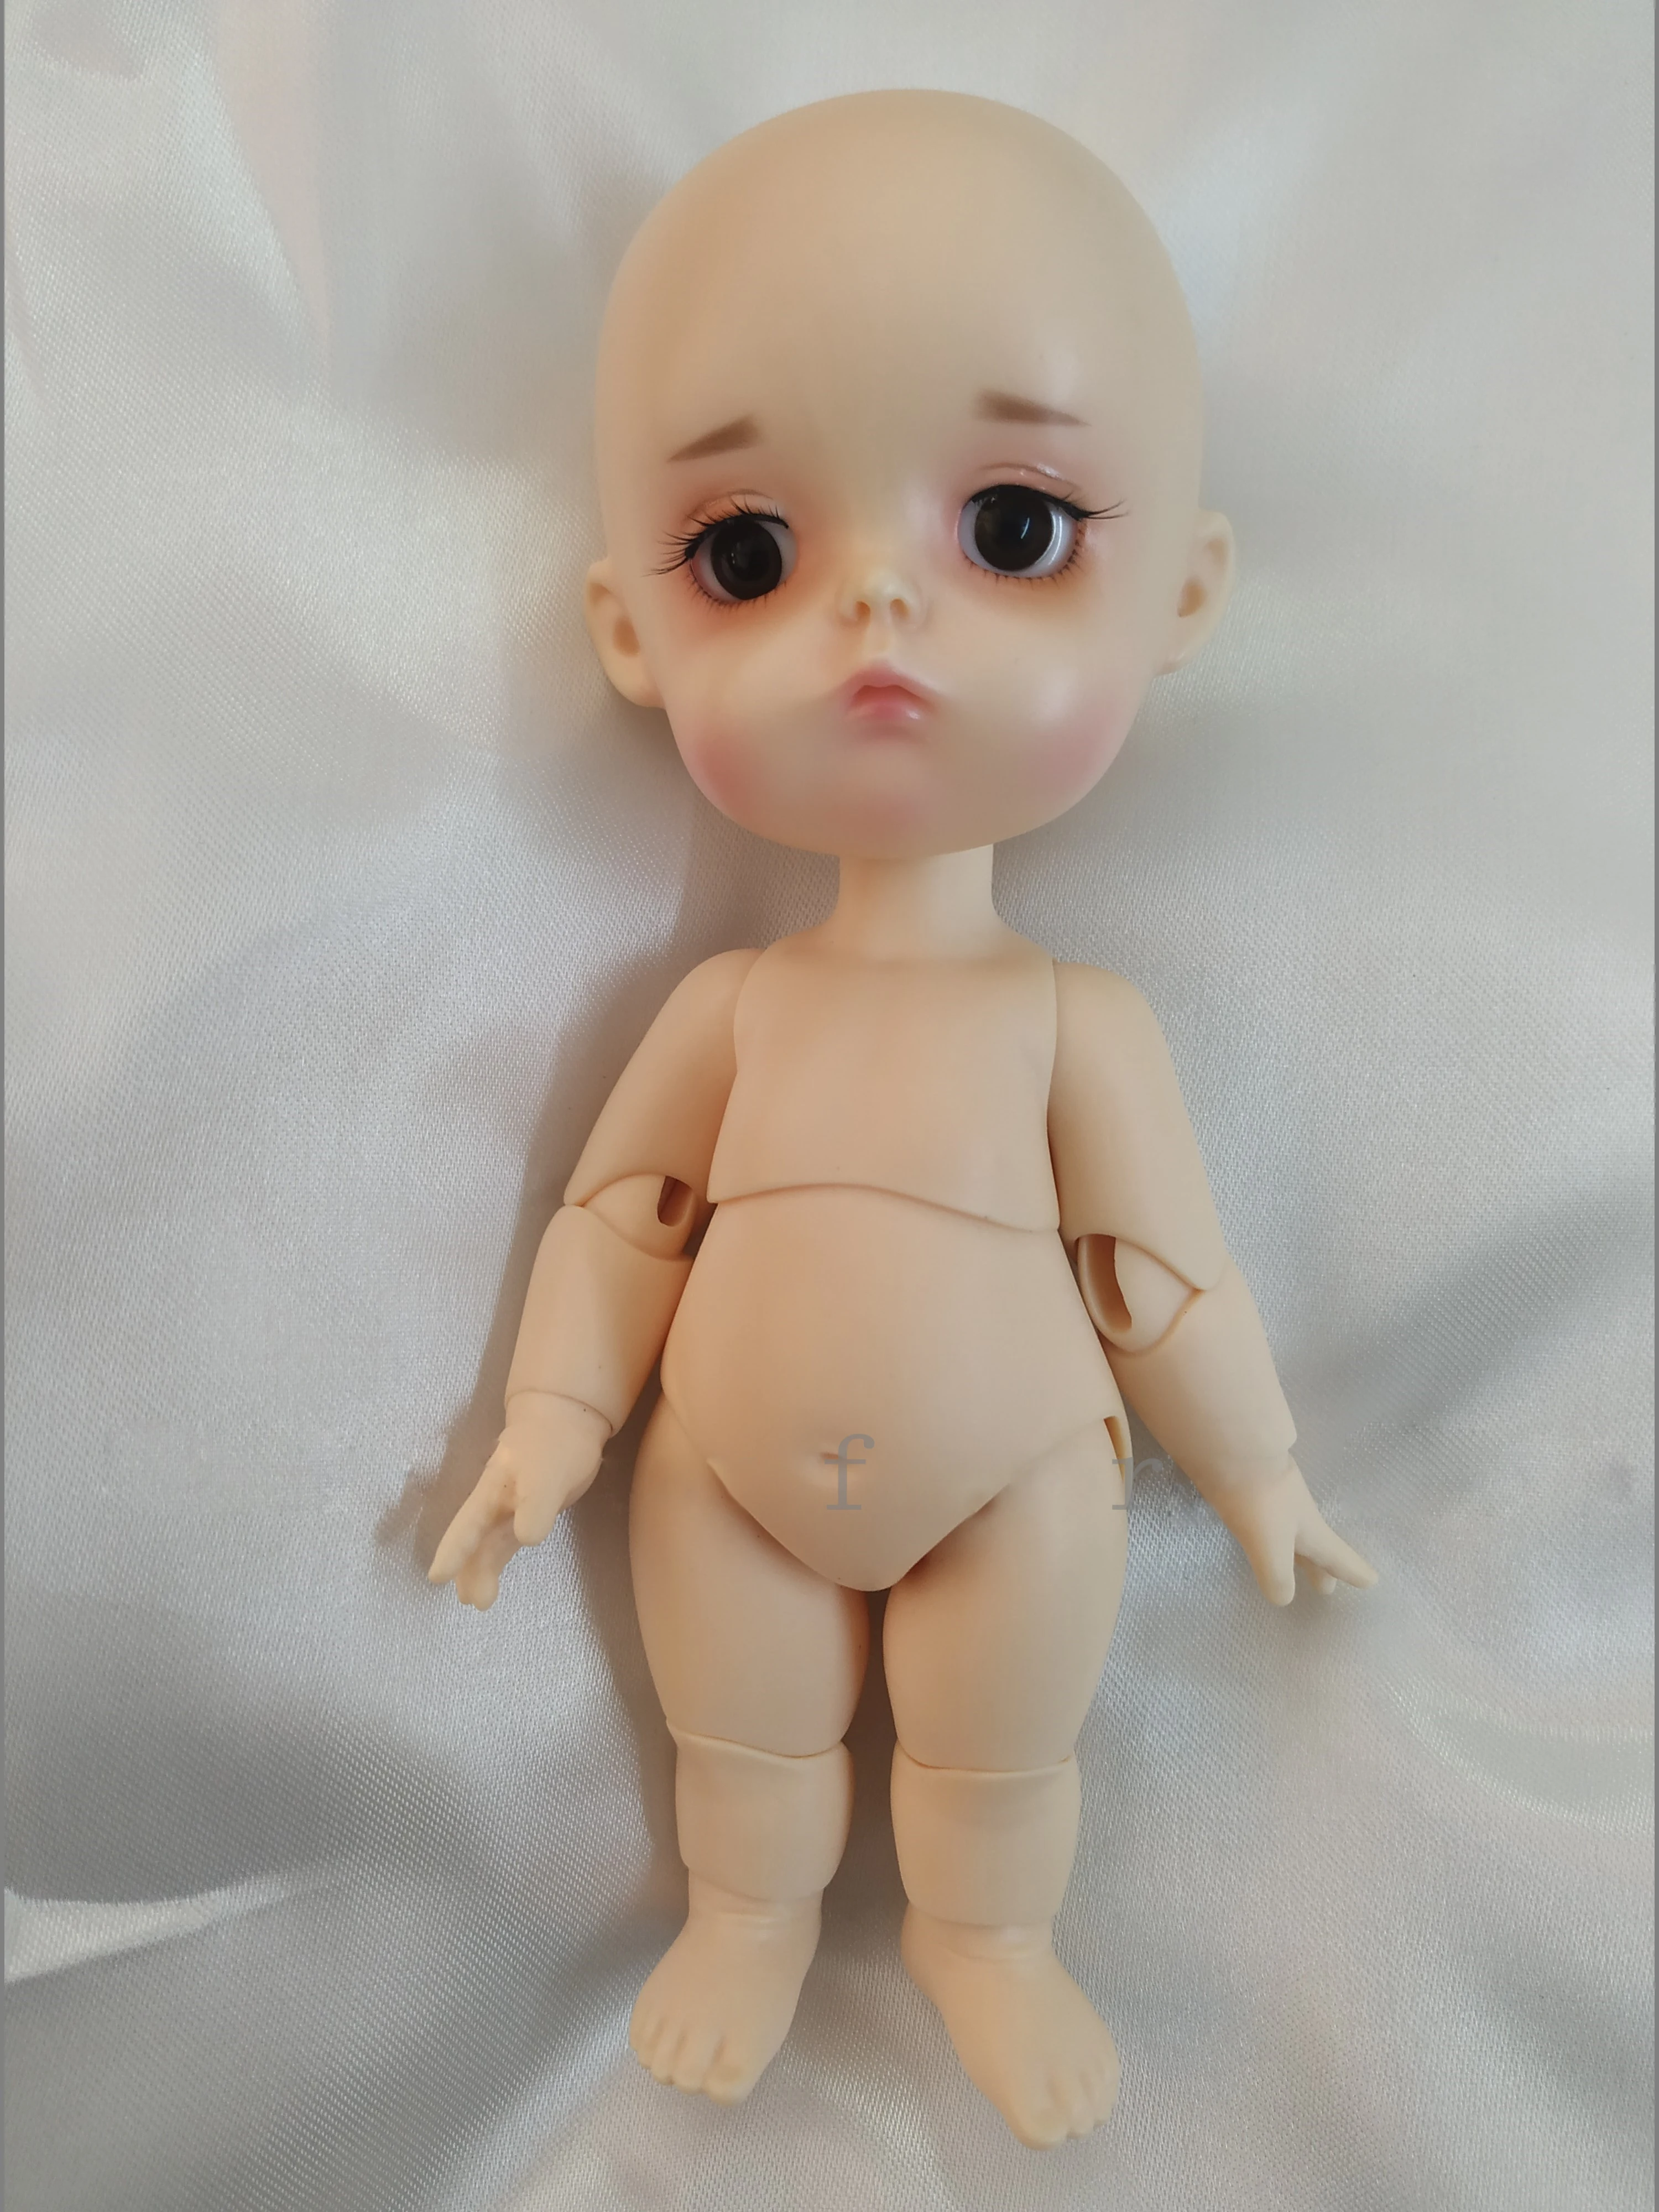 Кукла BJD 1/8 bru mong 1 # Fashion joint doll прекрасный подарок Бесплатная доставка Изображение 2